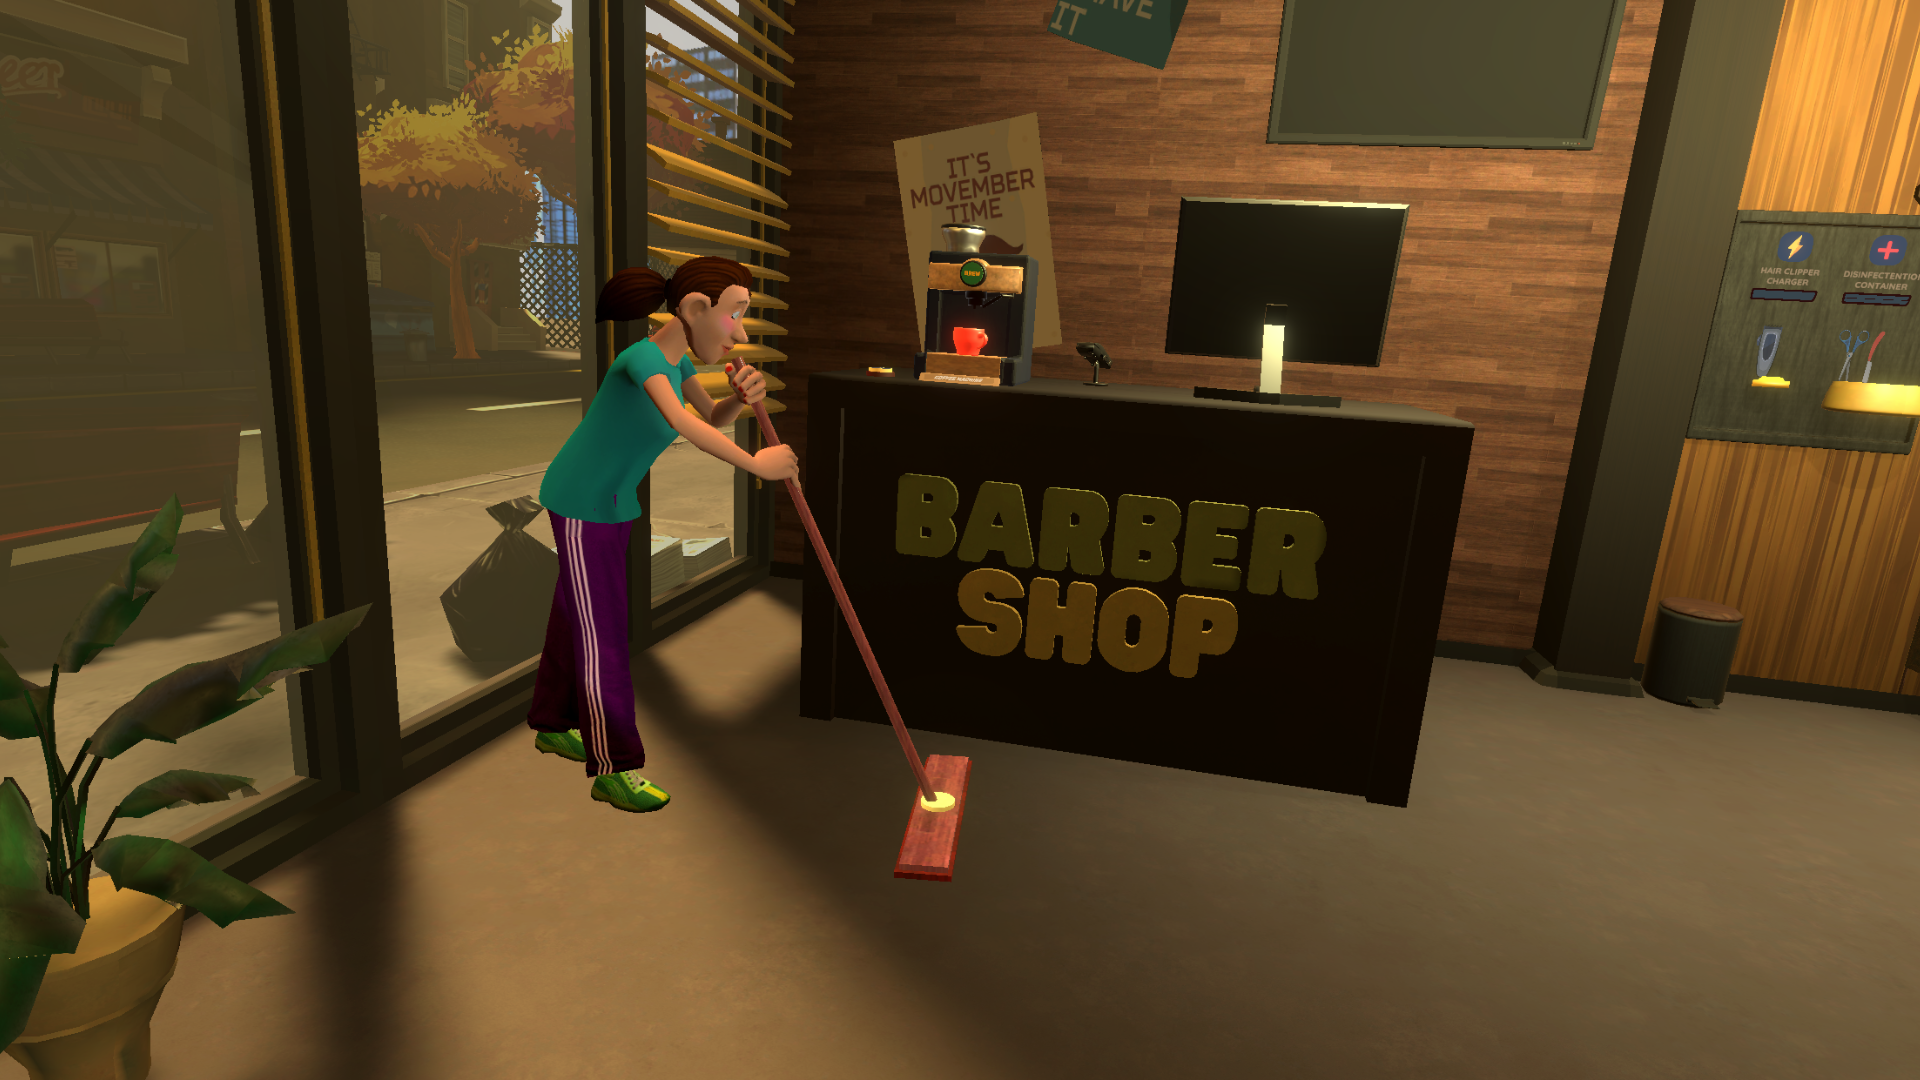 Barbershop Simulator VR